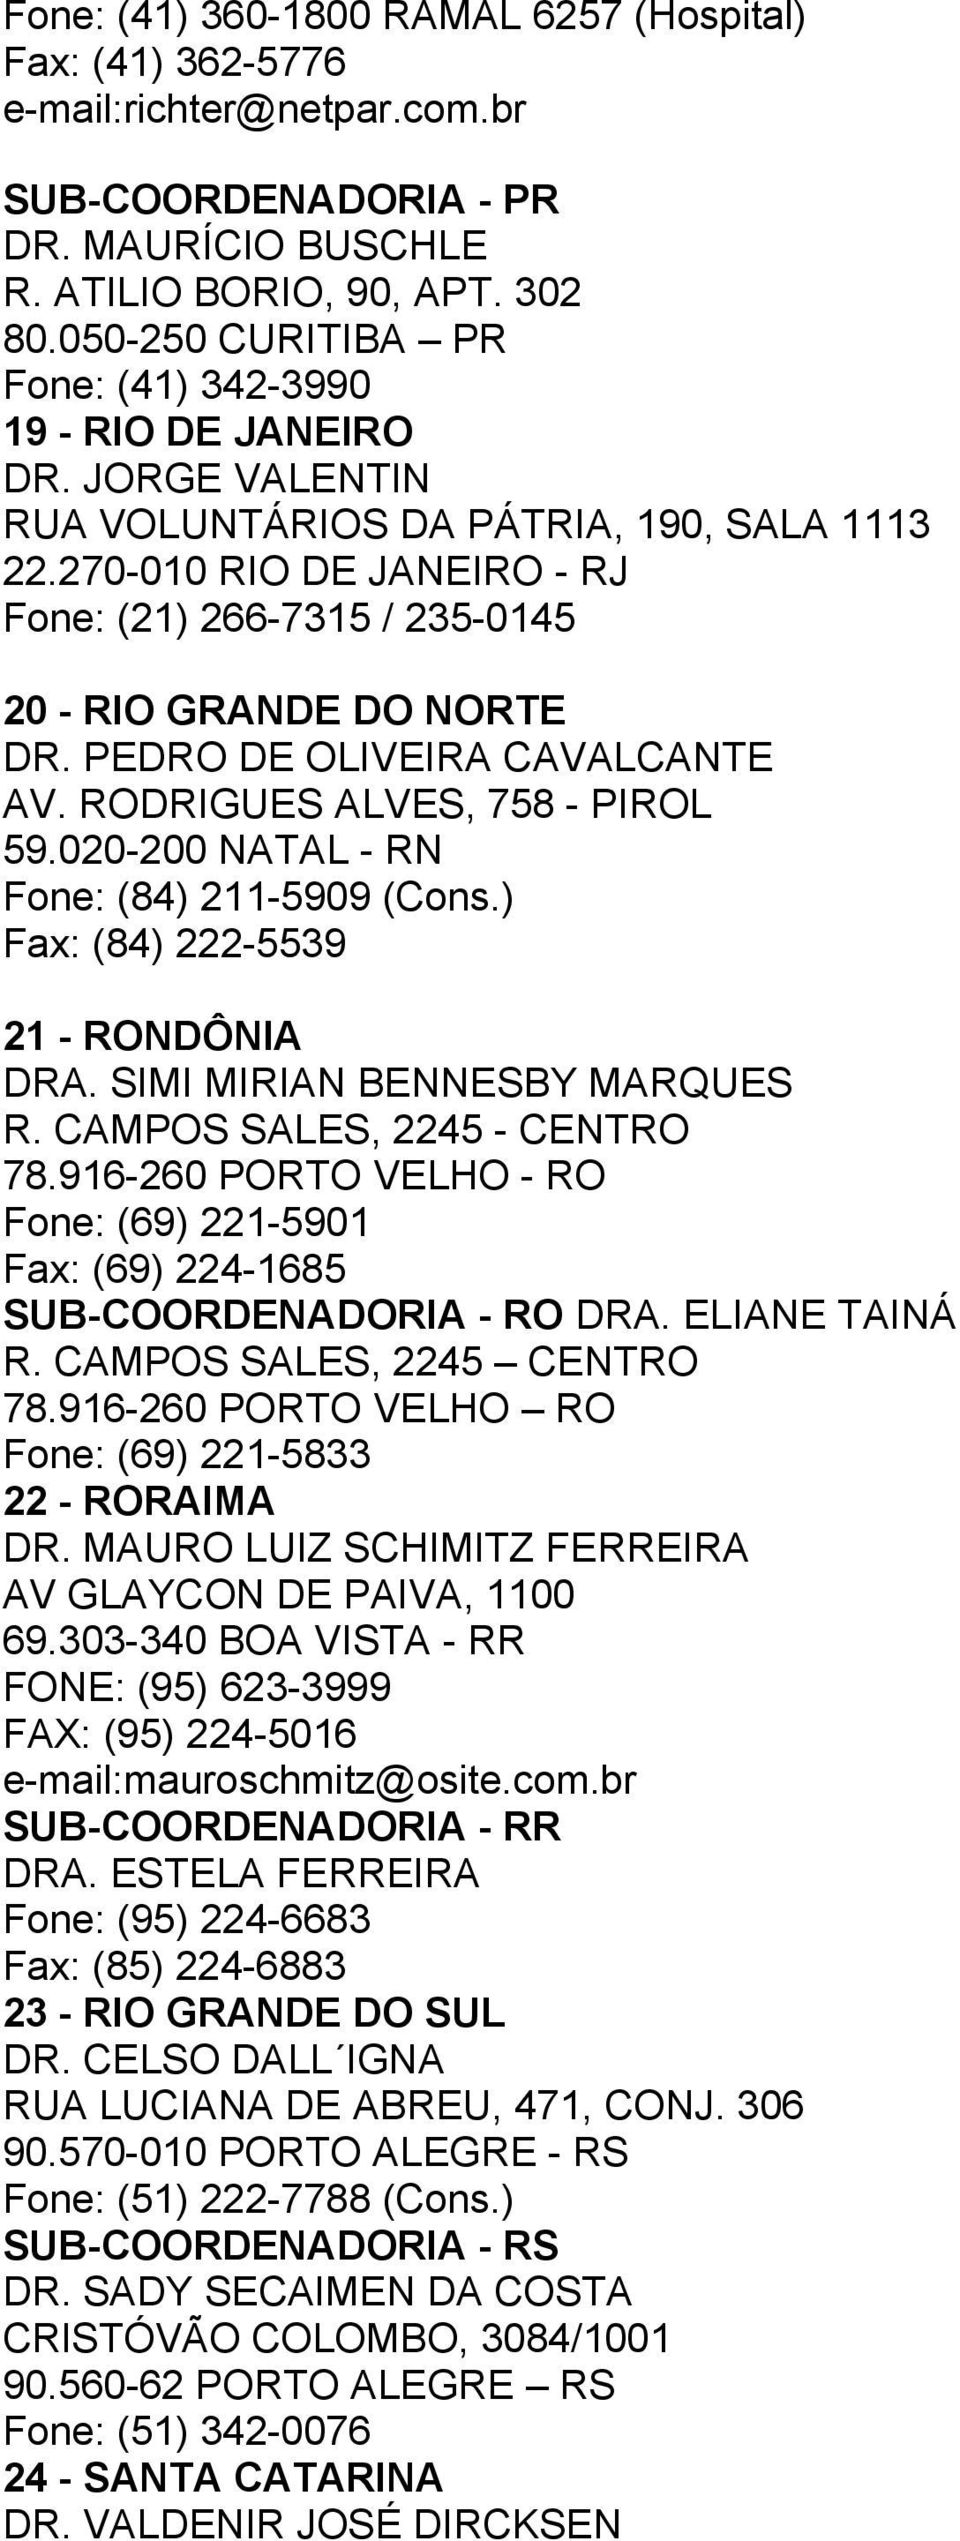 270-010 RIO DE JANEIRO - RJ Fone: (21) 266-7315 / 235-0145 20 - RIO GRANDE DO NORTE DR. PEDRO DE OLIVEIRA CAVALCANTE AV. RODRIGUES ALVES, 758 - PIROL 59.020-200 NATAL - RN Fone: (84) 211-5909 (Cons.